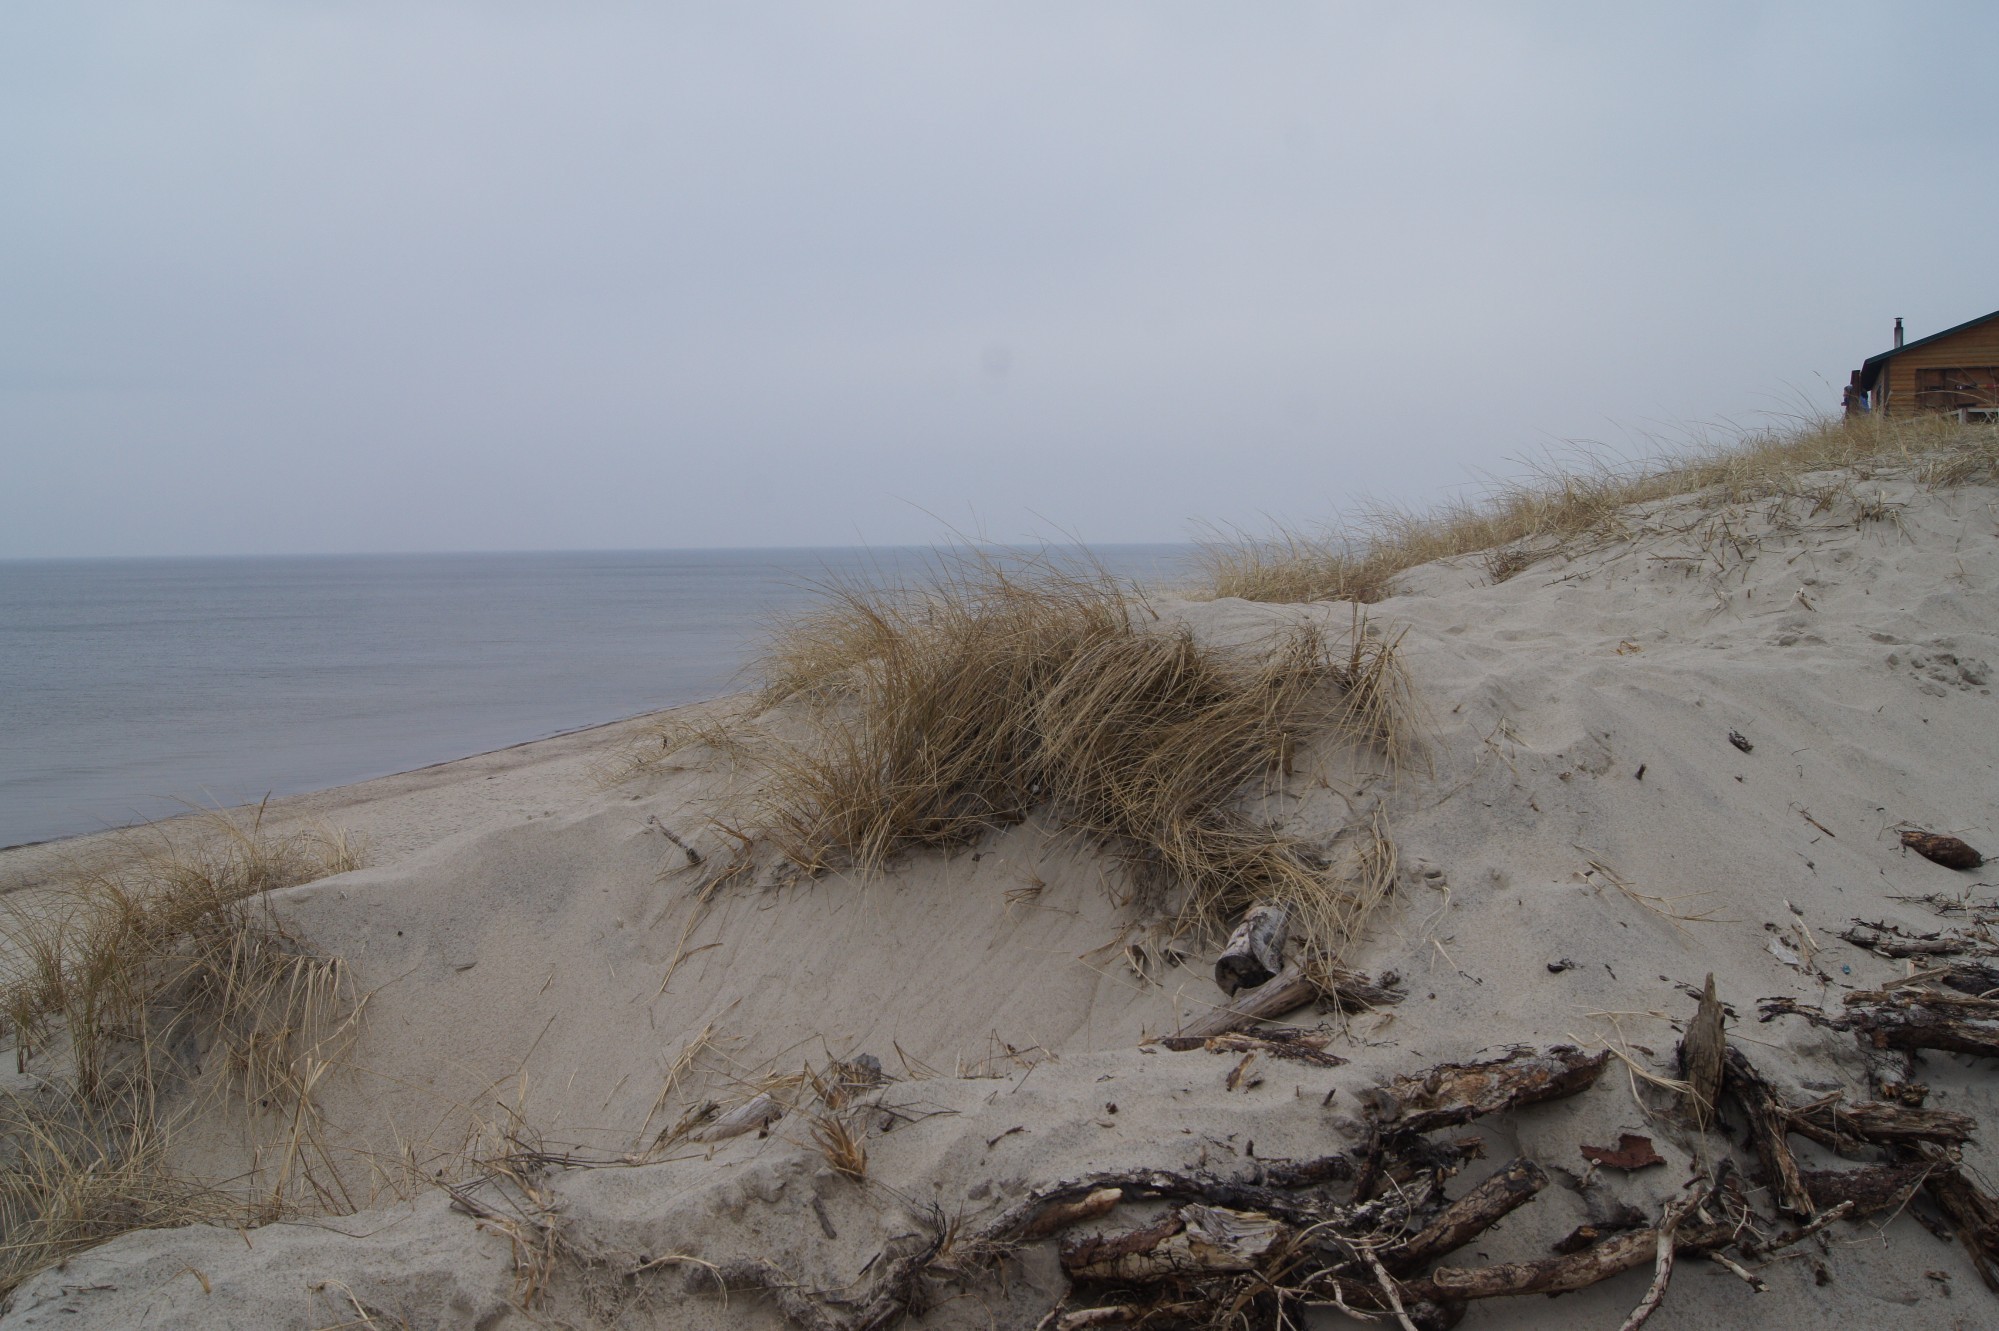 Куршская коса<br/>
Узкая полоса суши, отделяющая Балтийское море от Куршского залива. Длина перешейка составляет около 100 км, он тянется от Зеленодольска до Клайпеды (Литва). В разных местах ширина Куршской косы колеблется от 400 до 3800 метров. Это уникальная природная территория с песчаными дюнами, соснами, живописным морем (к сожалению, почти всегда холодным) и замечательным воздухом.